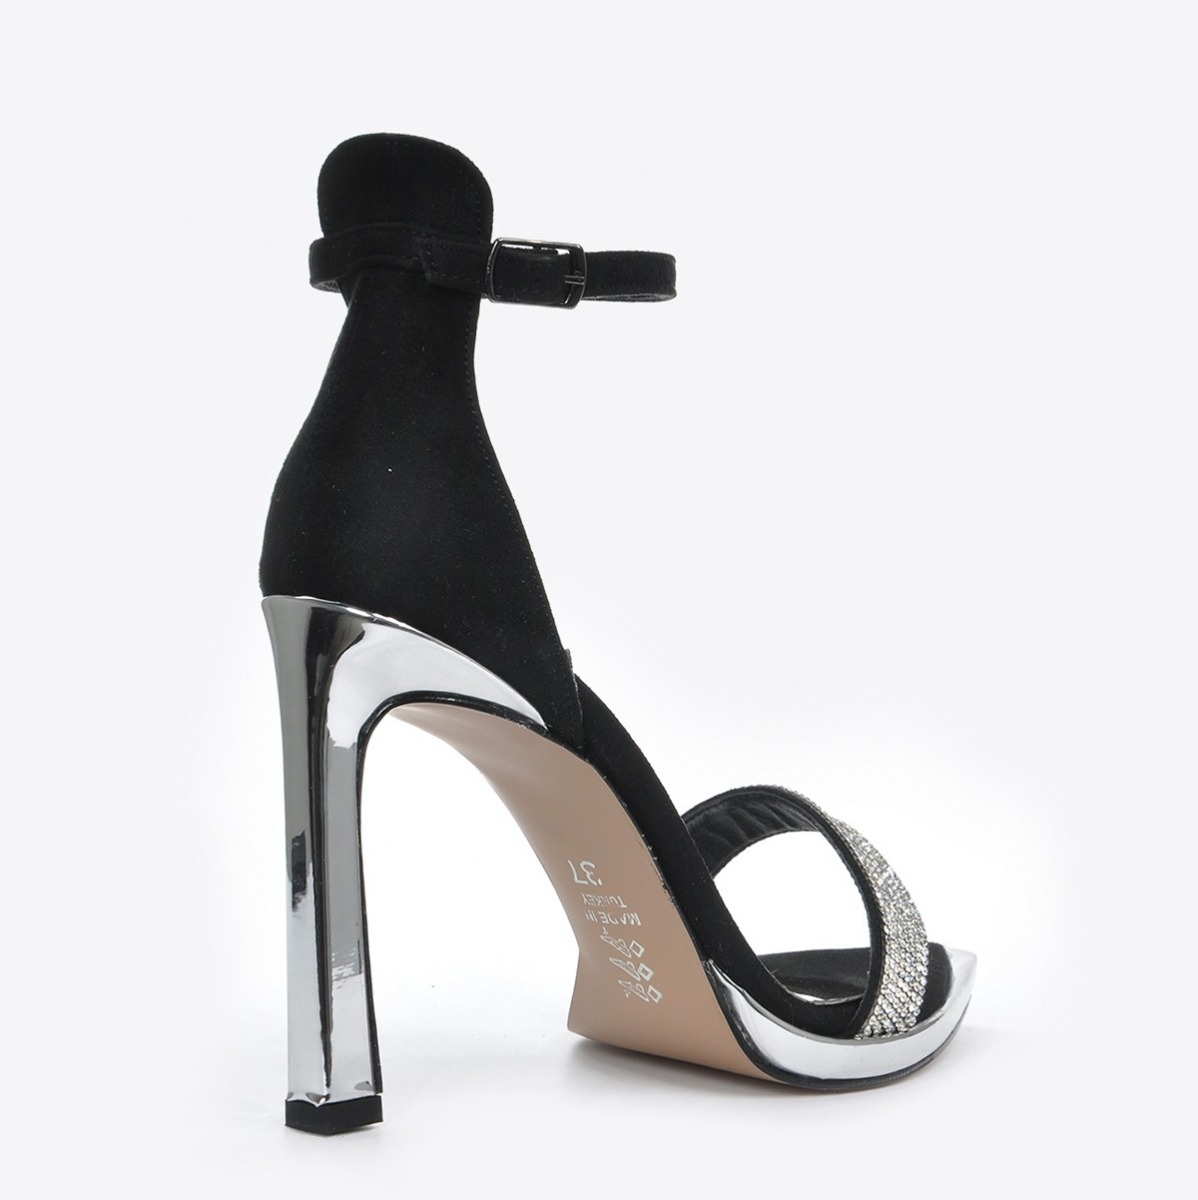 Flo Kadın Siyah Süet Klasik Topuklu Ayakkabı VZN20-179Y. 4